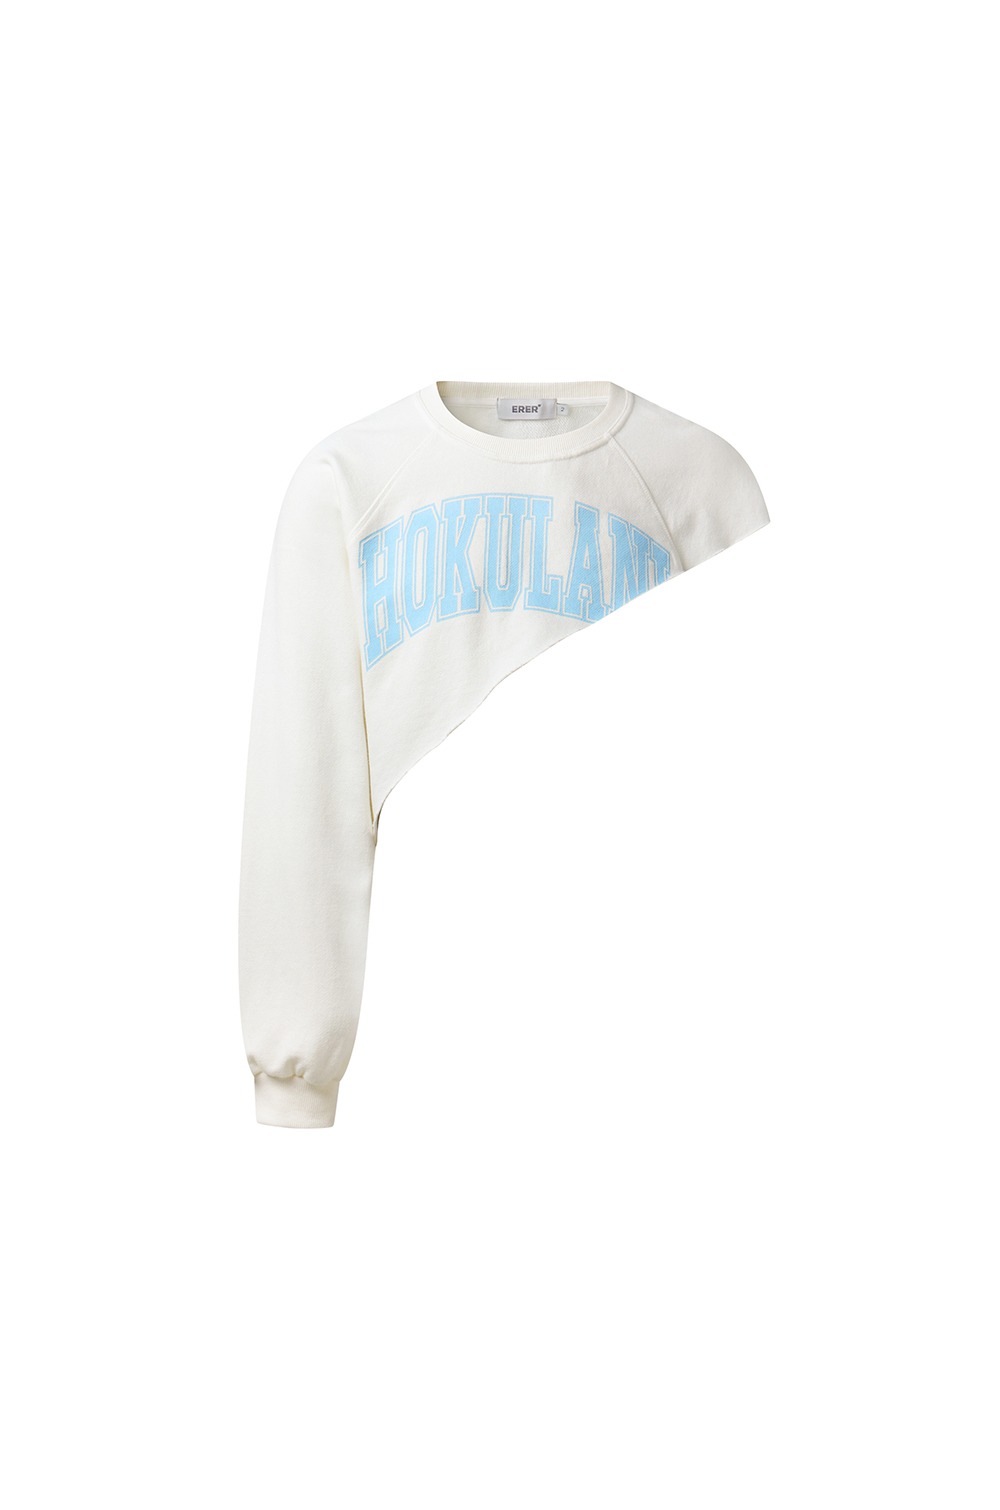 [UN] Hokulani diagonal sweatshirt - Ivory